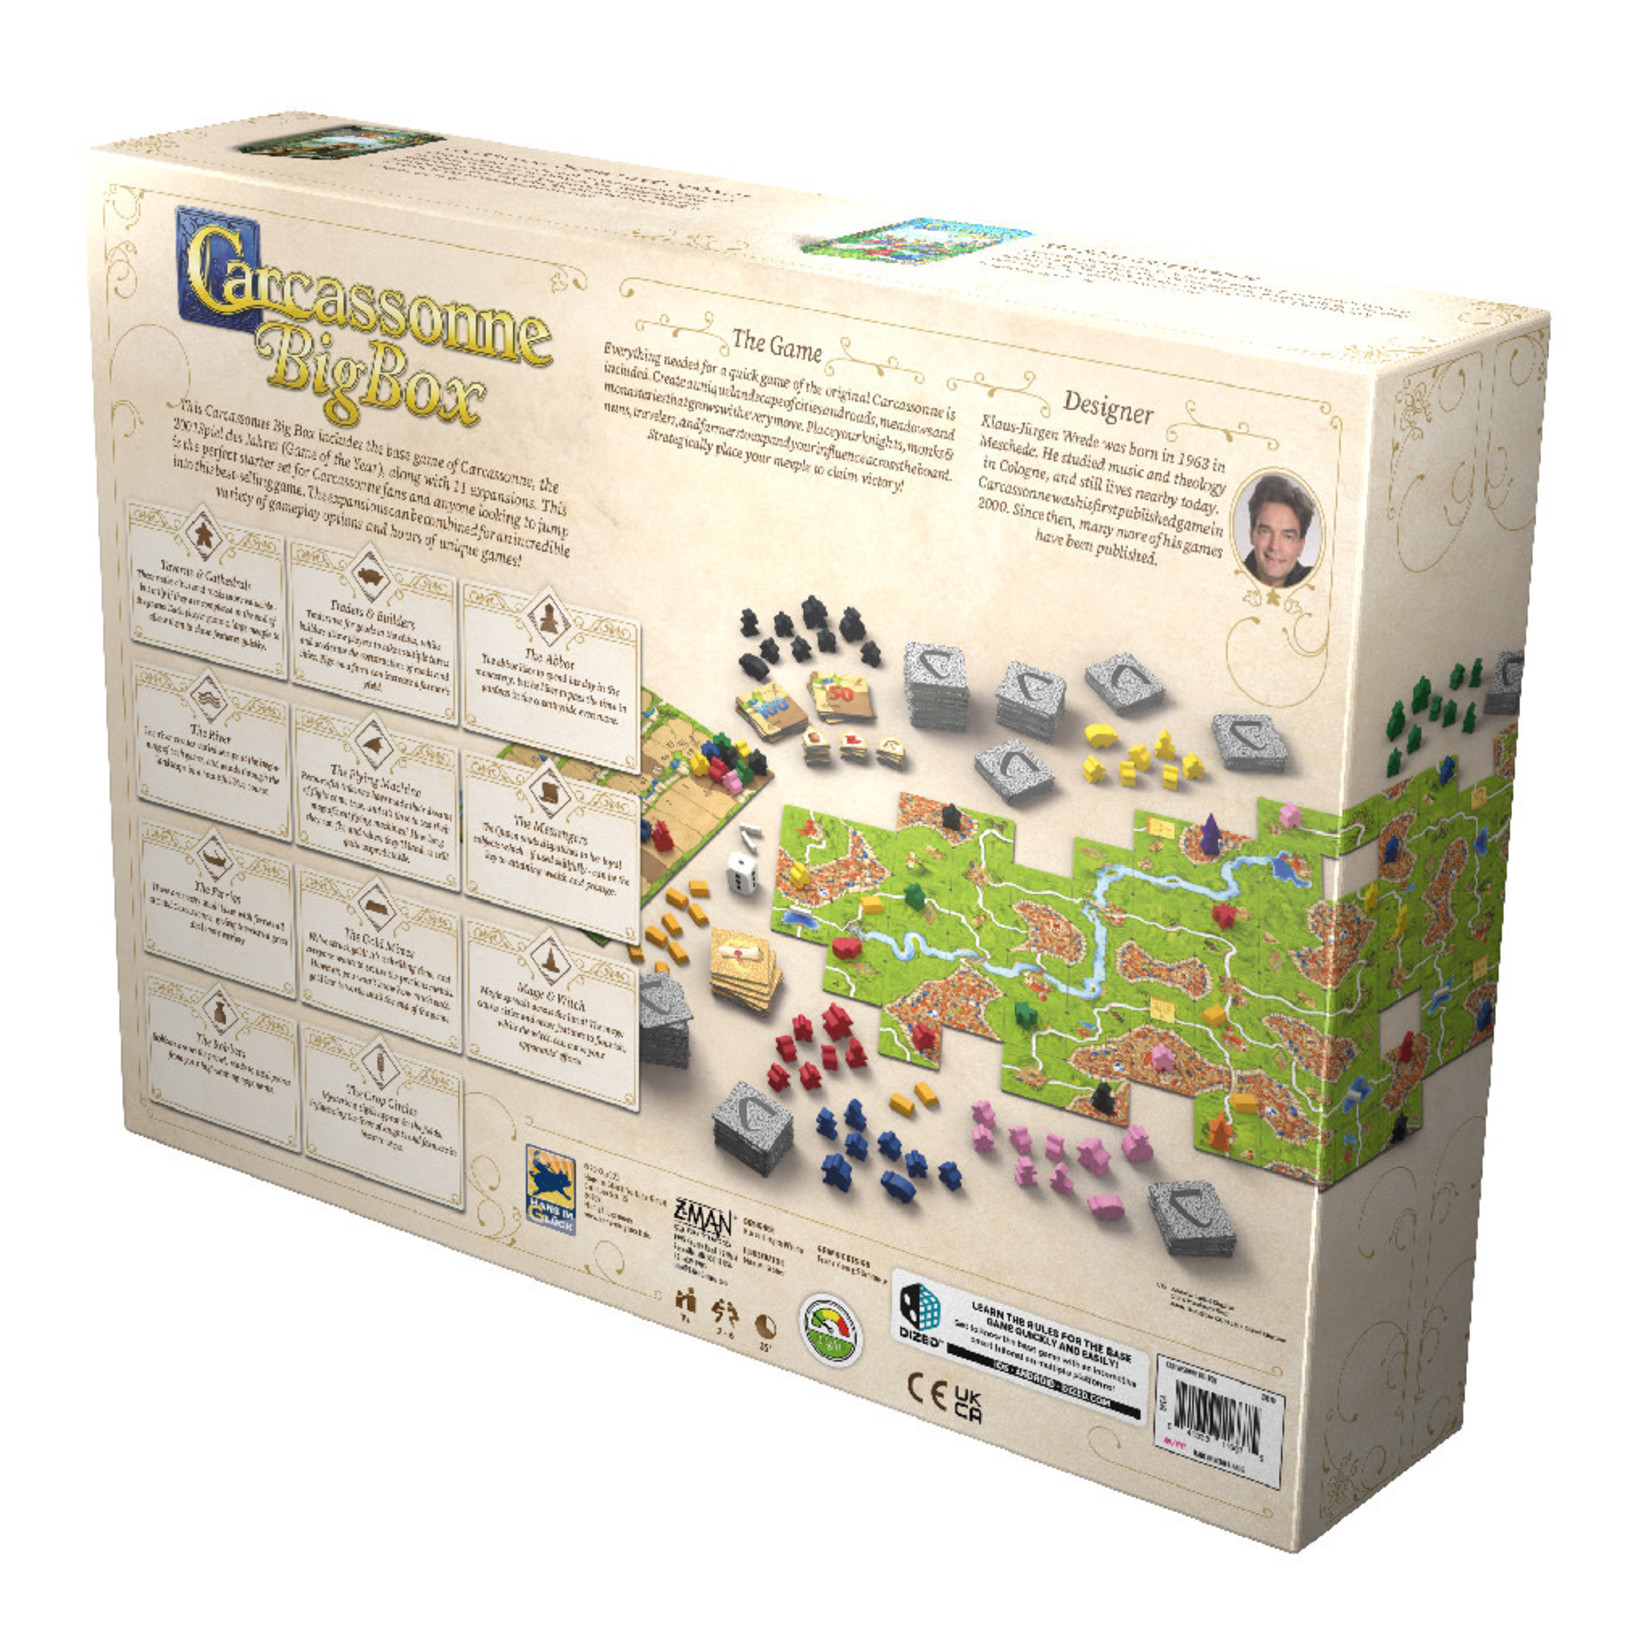 Z-Man Games Carcassonne: Big Box